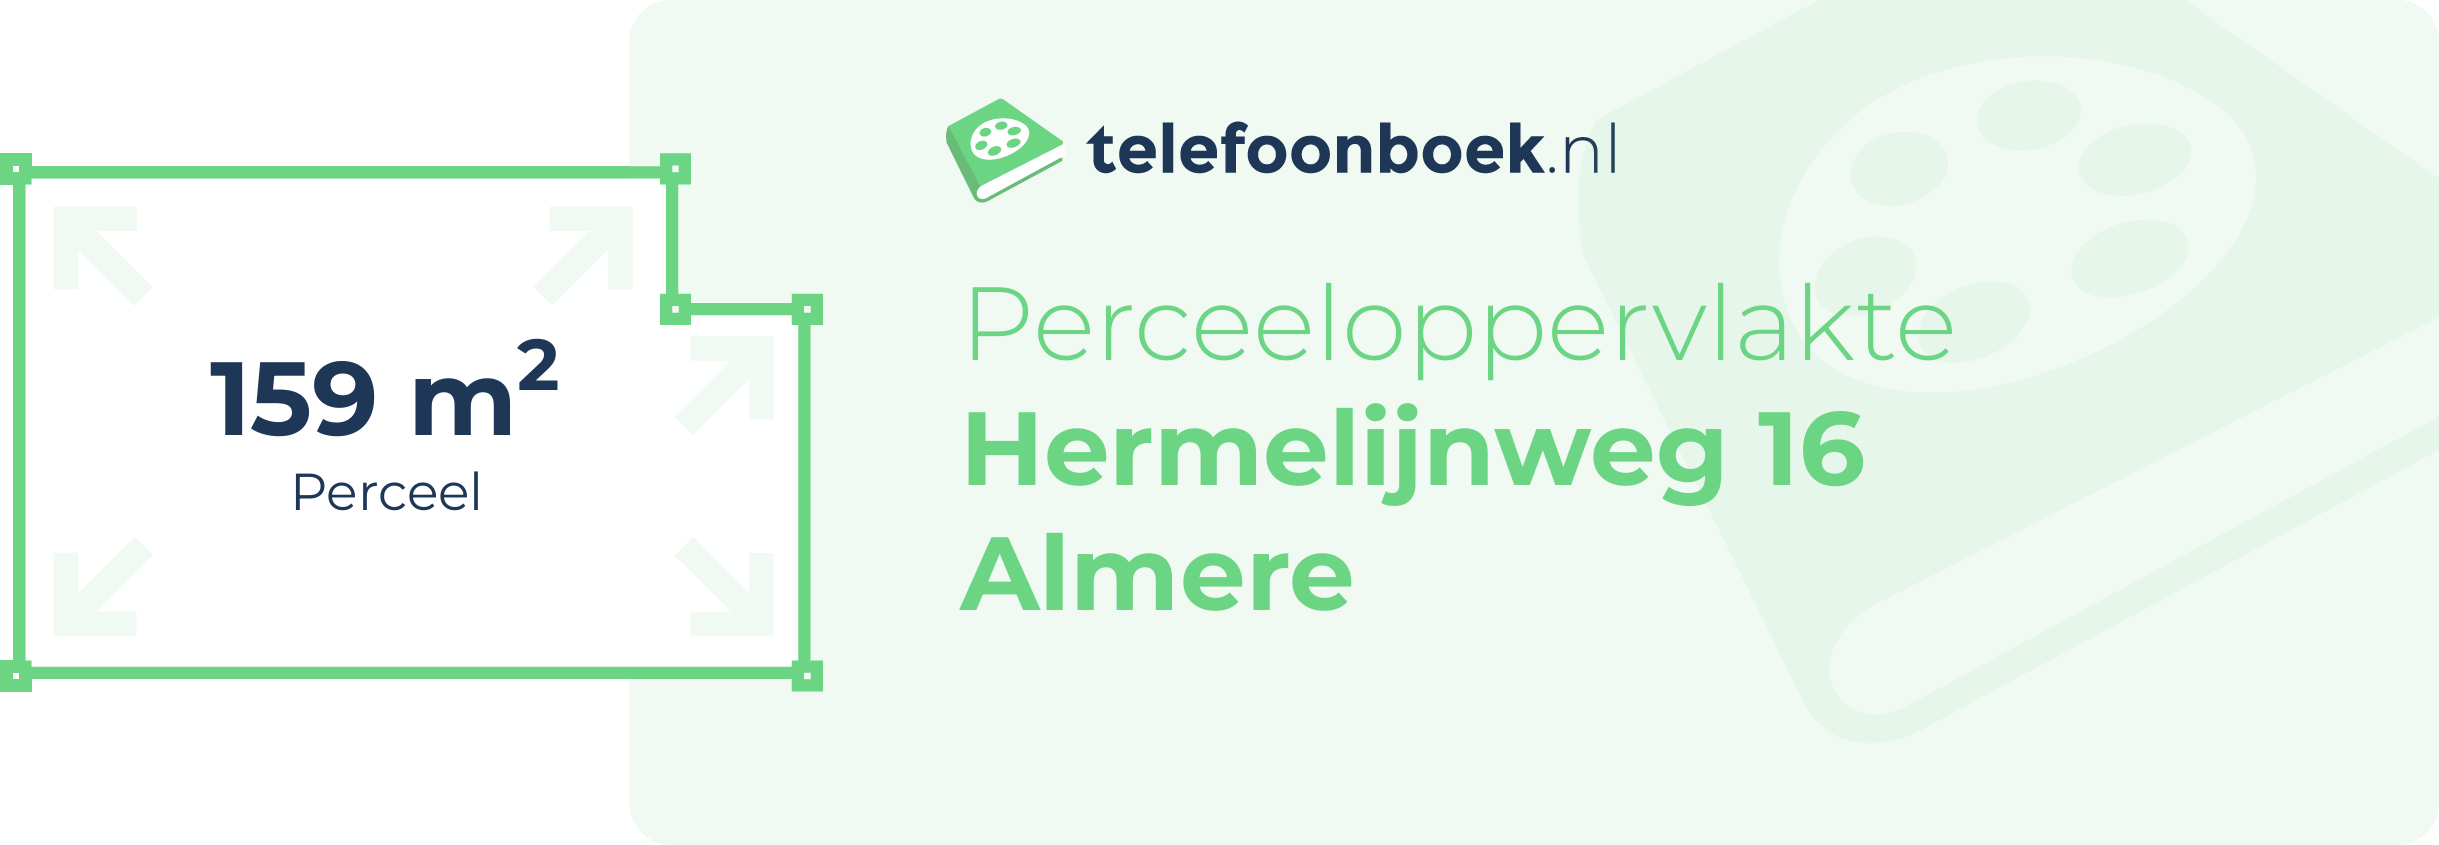 Perceeloppervlakte Hermelijnweg 16 Almere